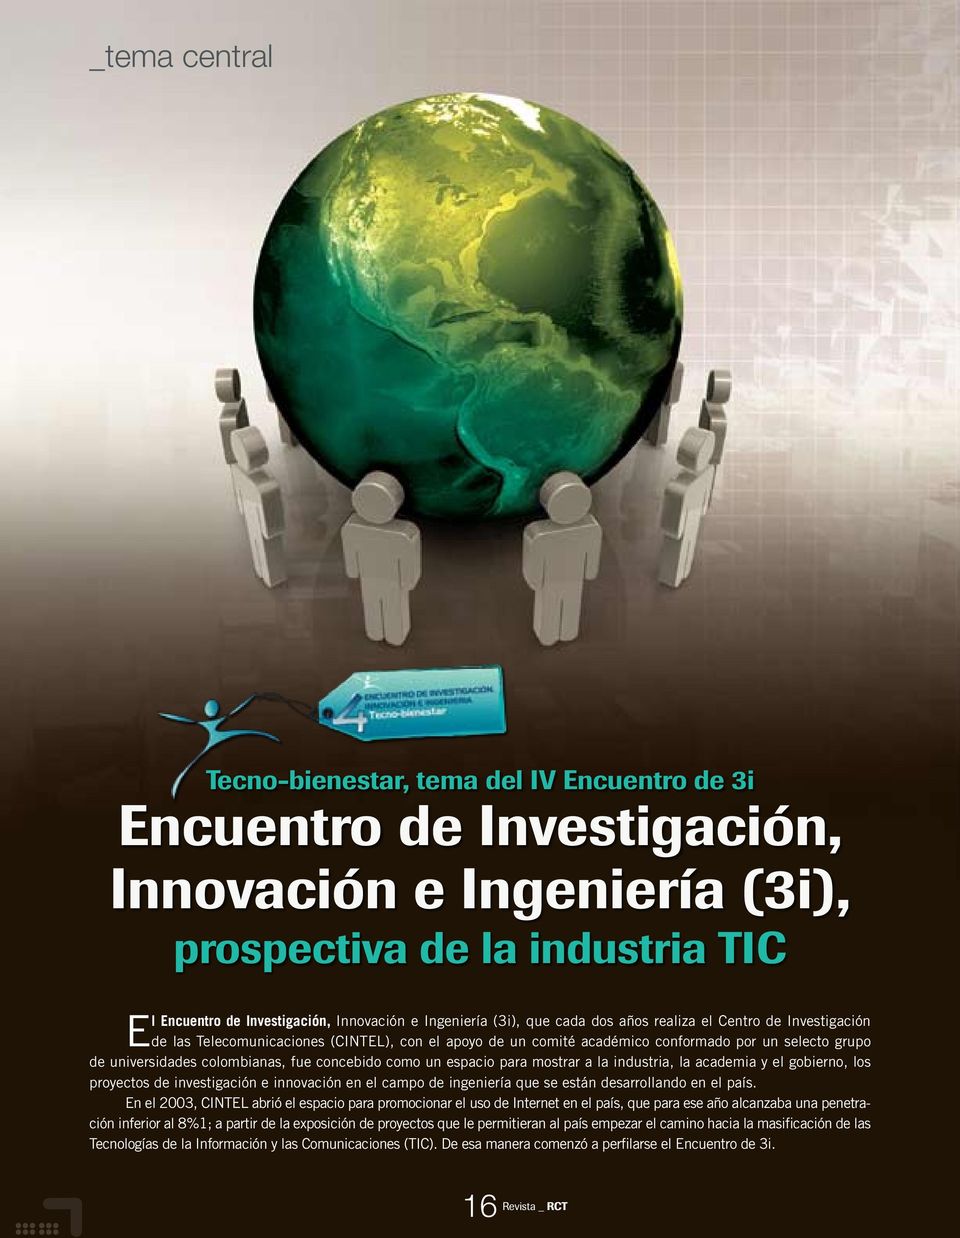 colombianas, fue concebido como un espacio para mostrar a la industria, la academia y el gobierno, los proyectos de investigación e innovación en el campo de ingeniería que se están desarrollando en